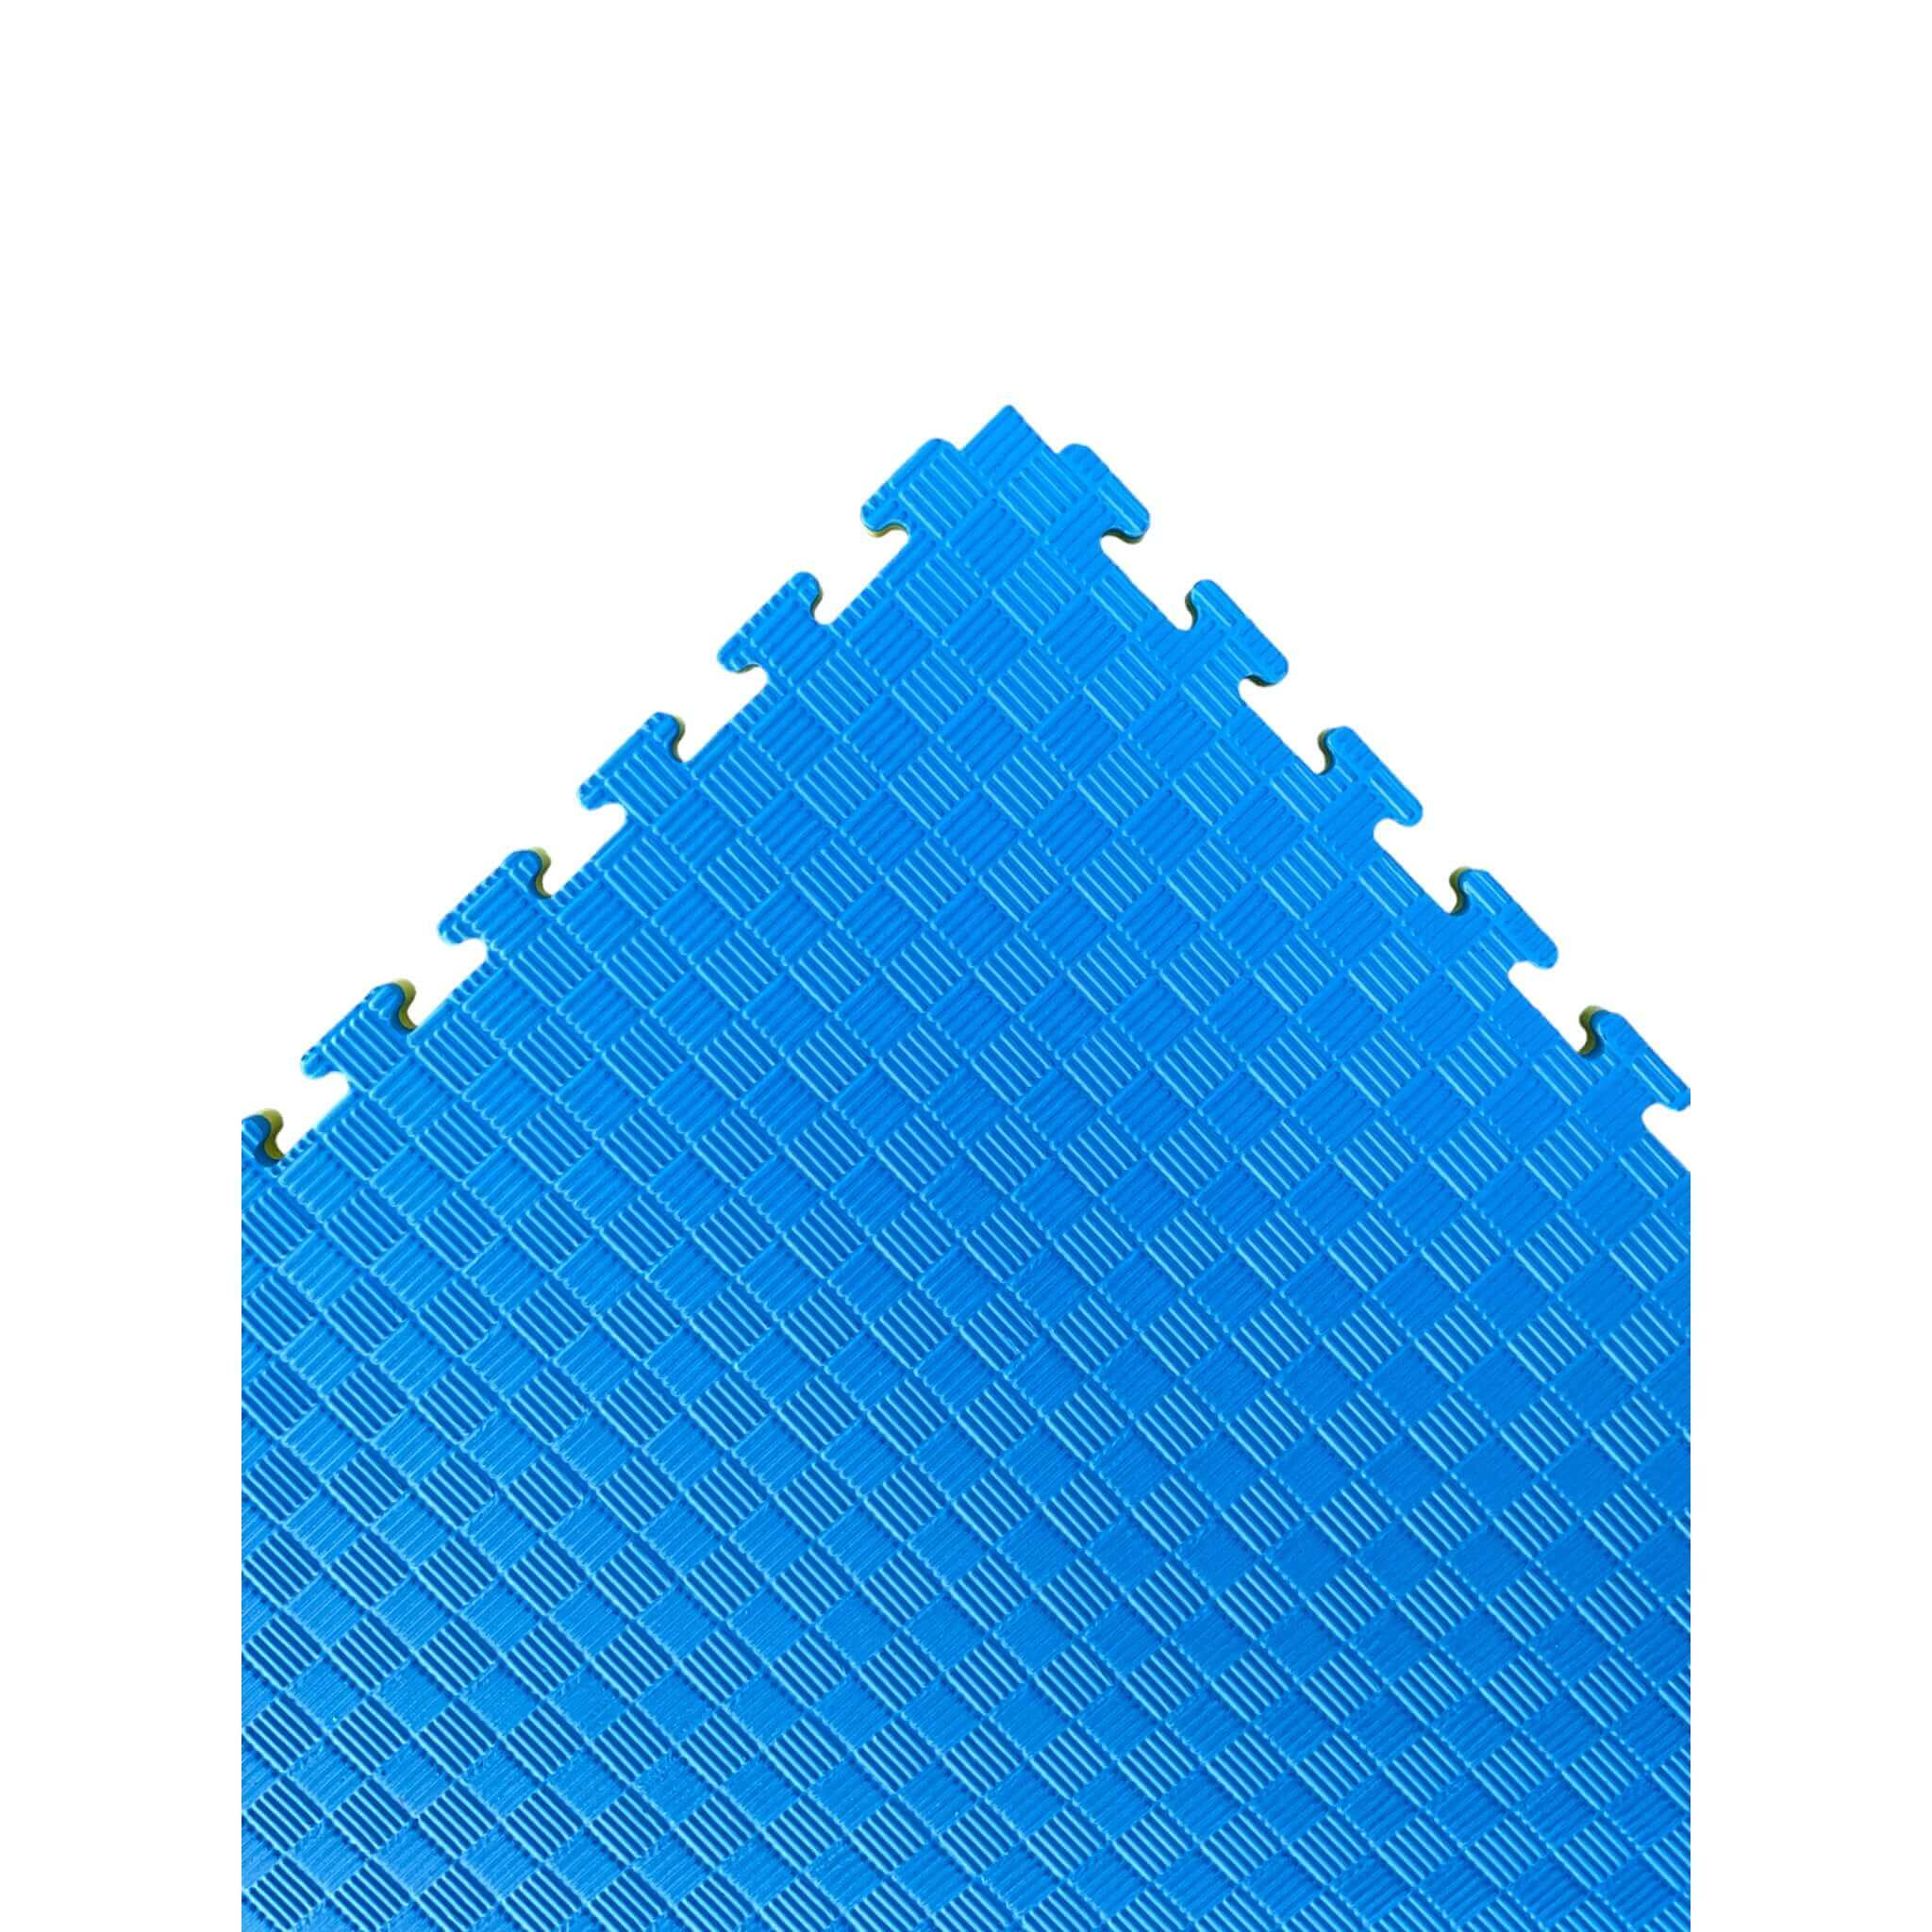 Pack of 10 - 20mm EVA Foam Jigsaw Interlocking Floor Tile Mat 1m x 1m BLUE / YELLOW | INSOURCE